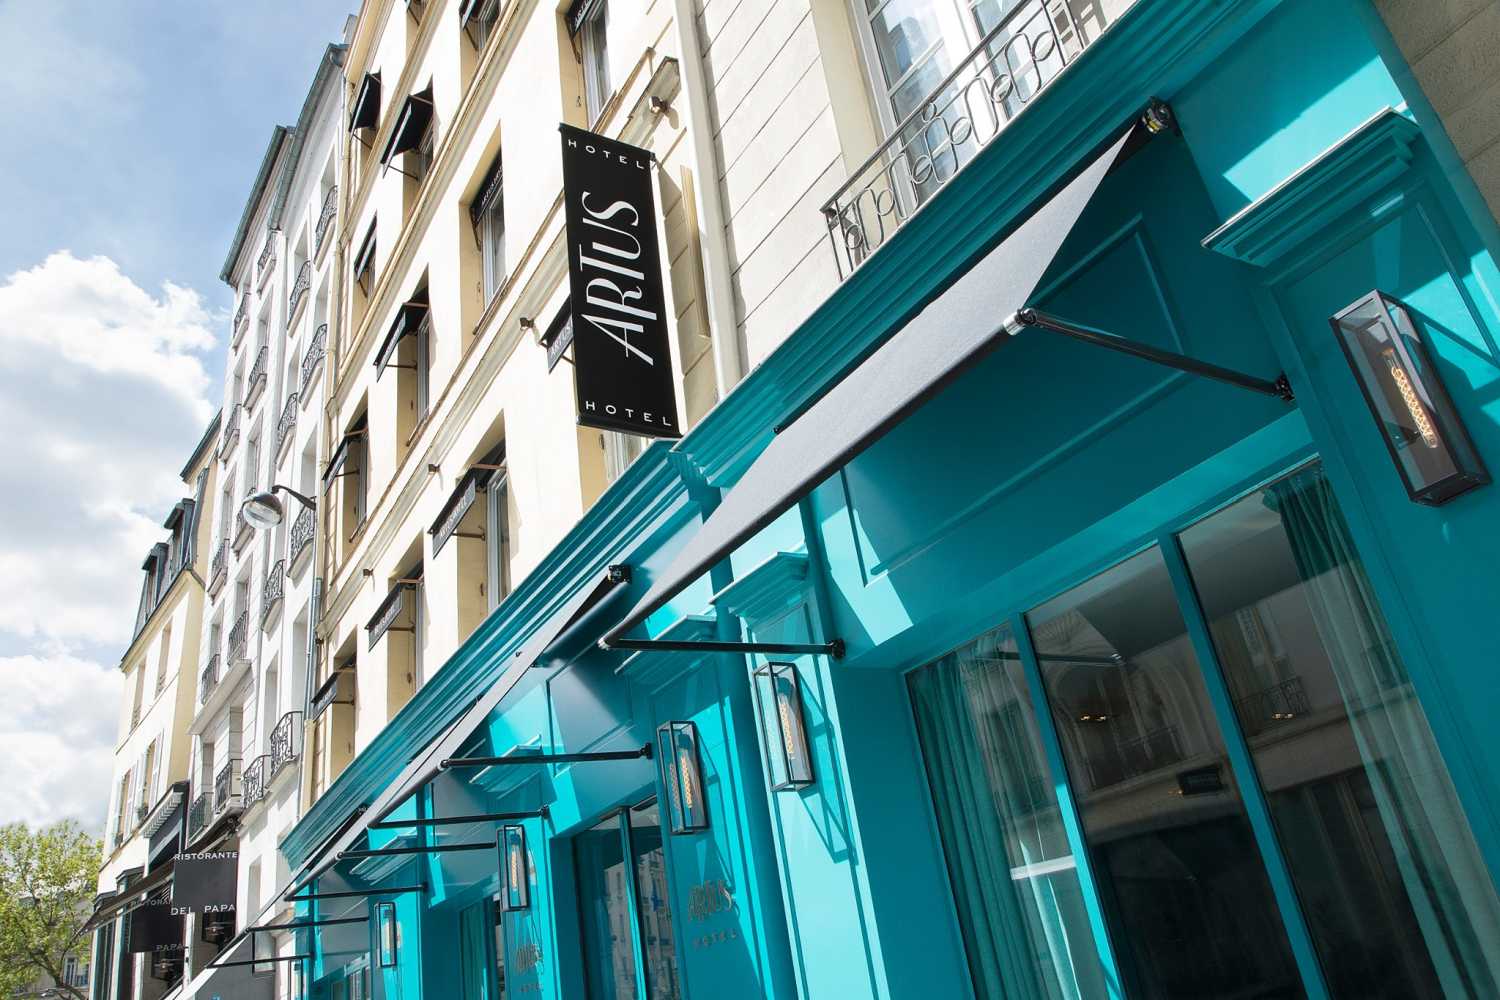 Hotel Artus Paris - France